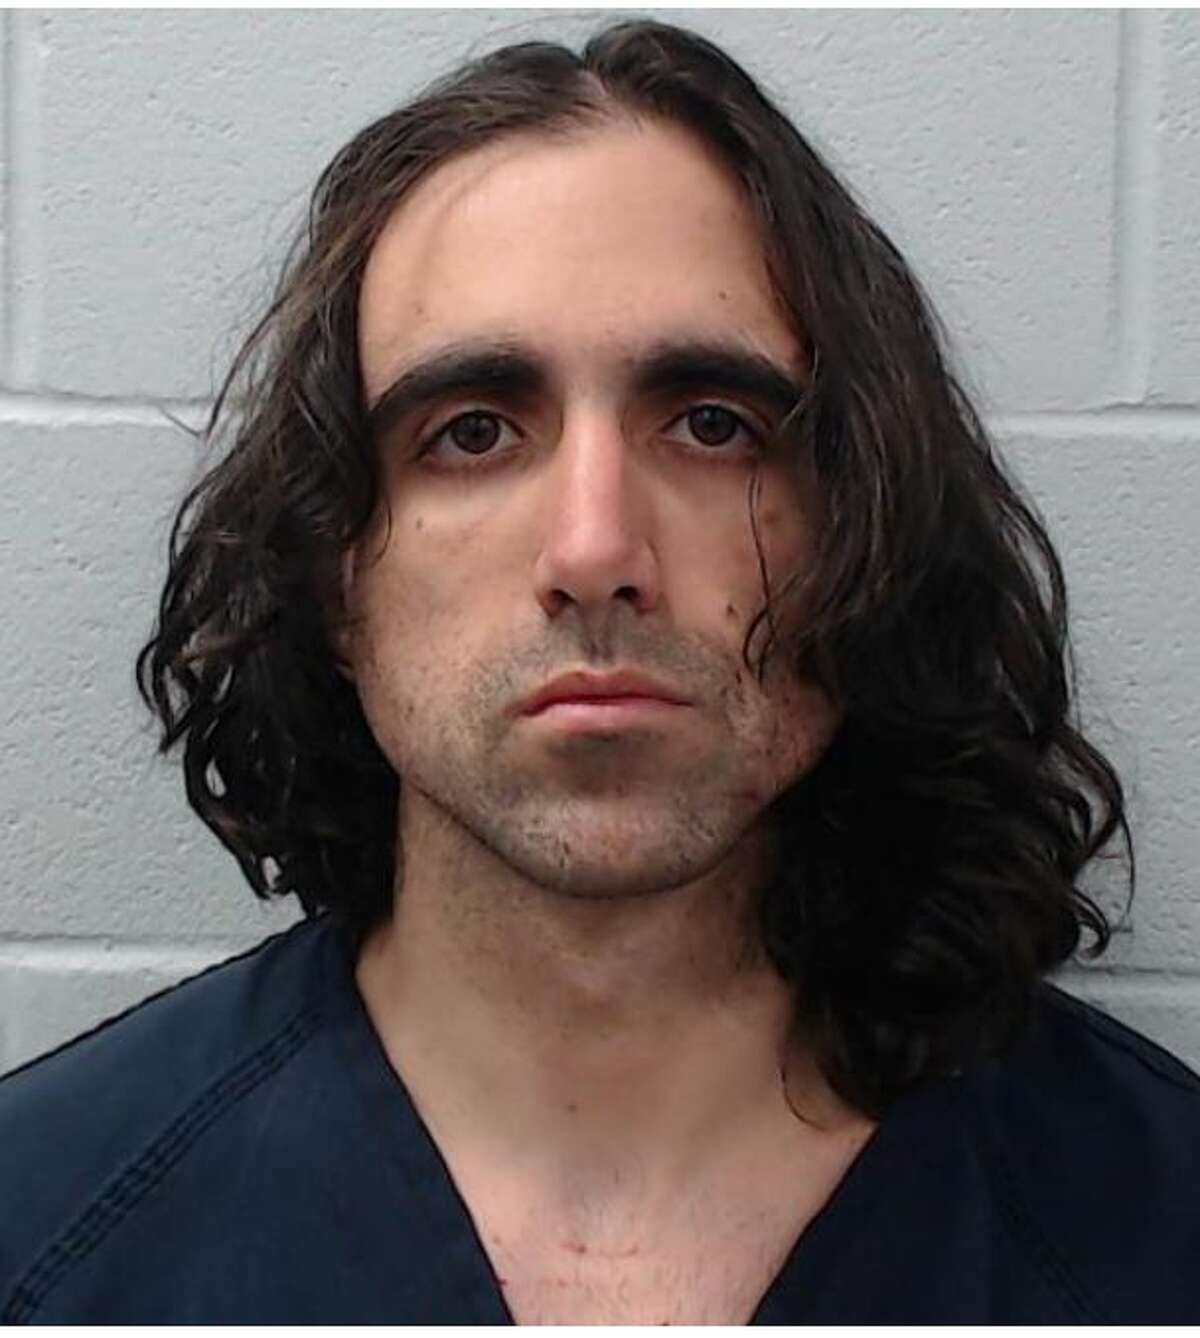 Jeremiah Kuenzli, 29, was arrested on February 26.